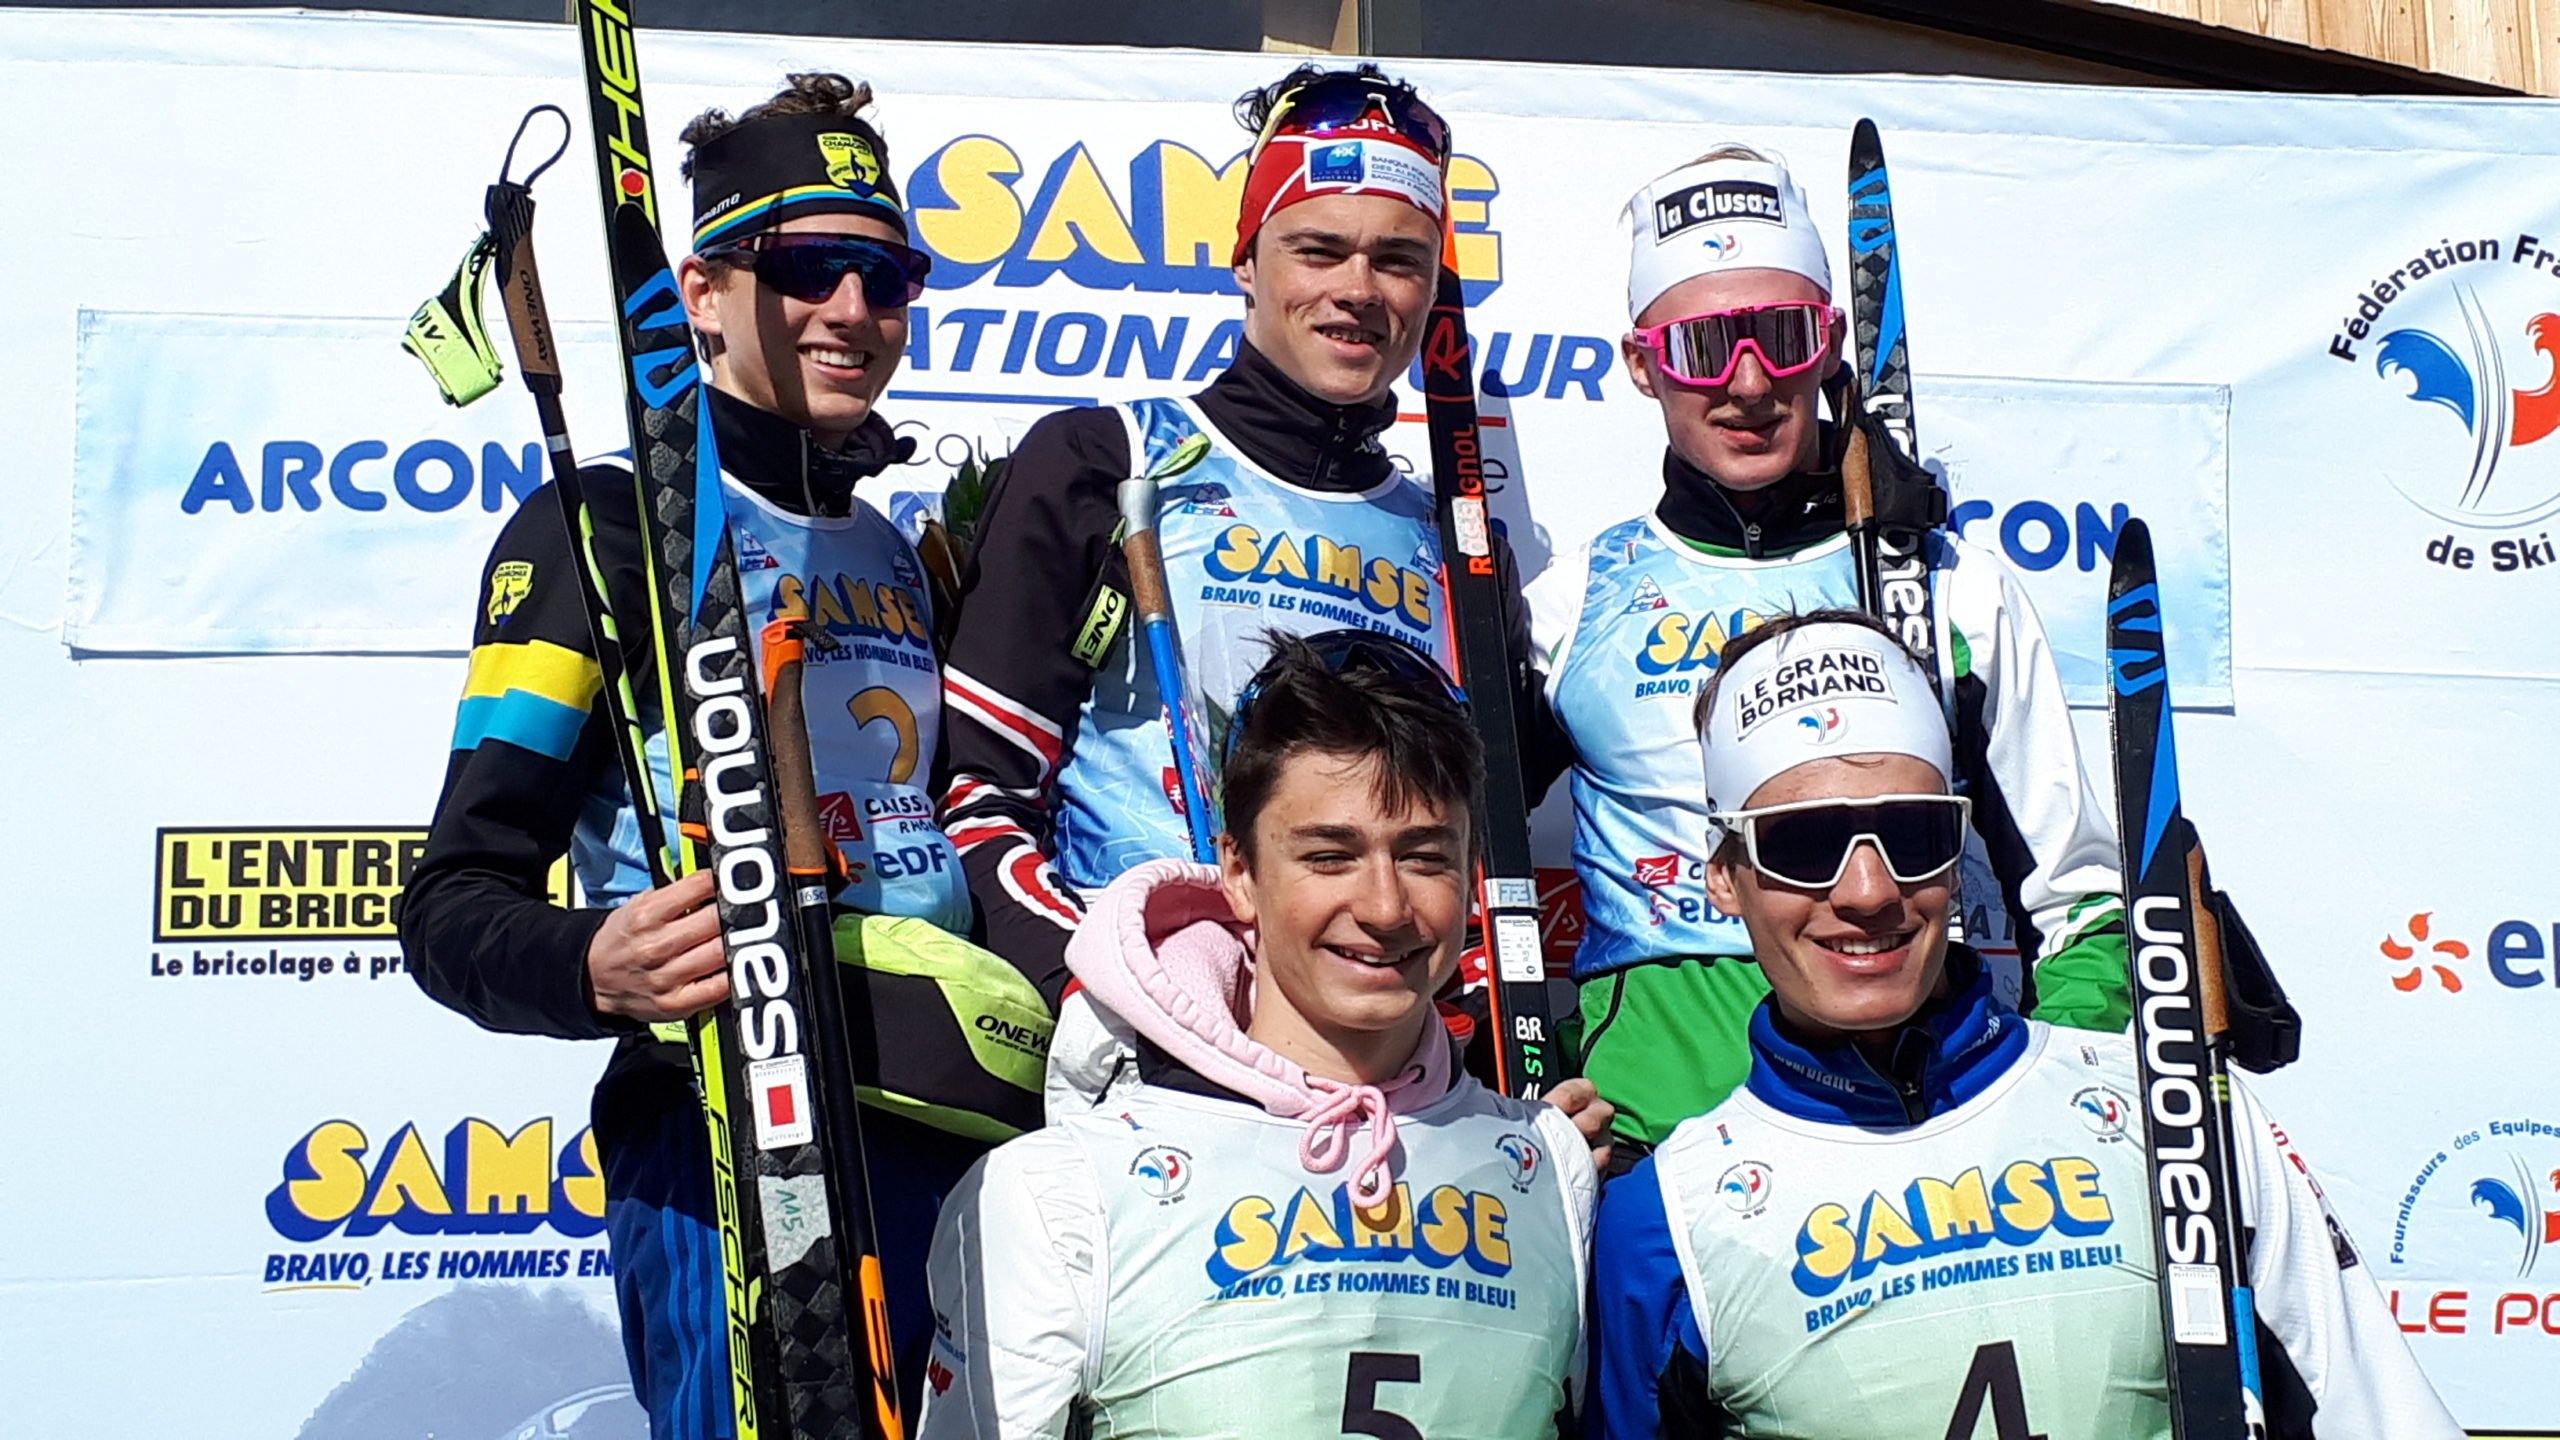 BIATHLON - Thomas Briffaz et Paula Botet ont dominé les sprints disputés ce samedi sur le stade des Tuffes dans le cadre de la 6e étape de la coupe de France / Samse National Tour de biathlon.